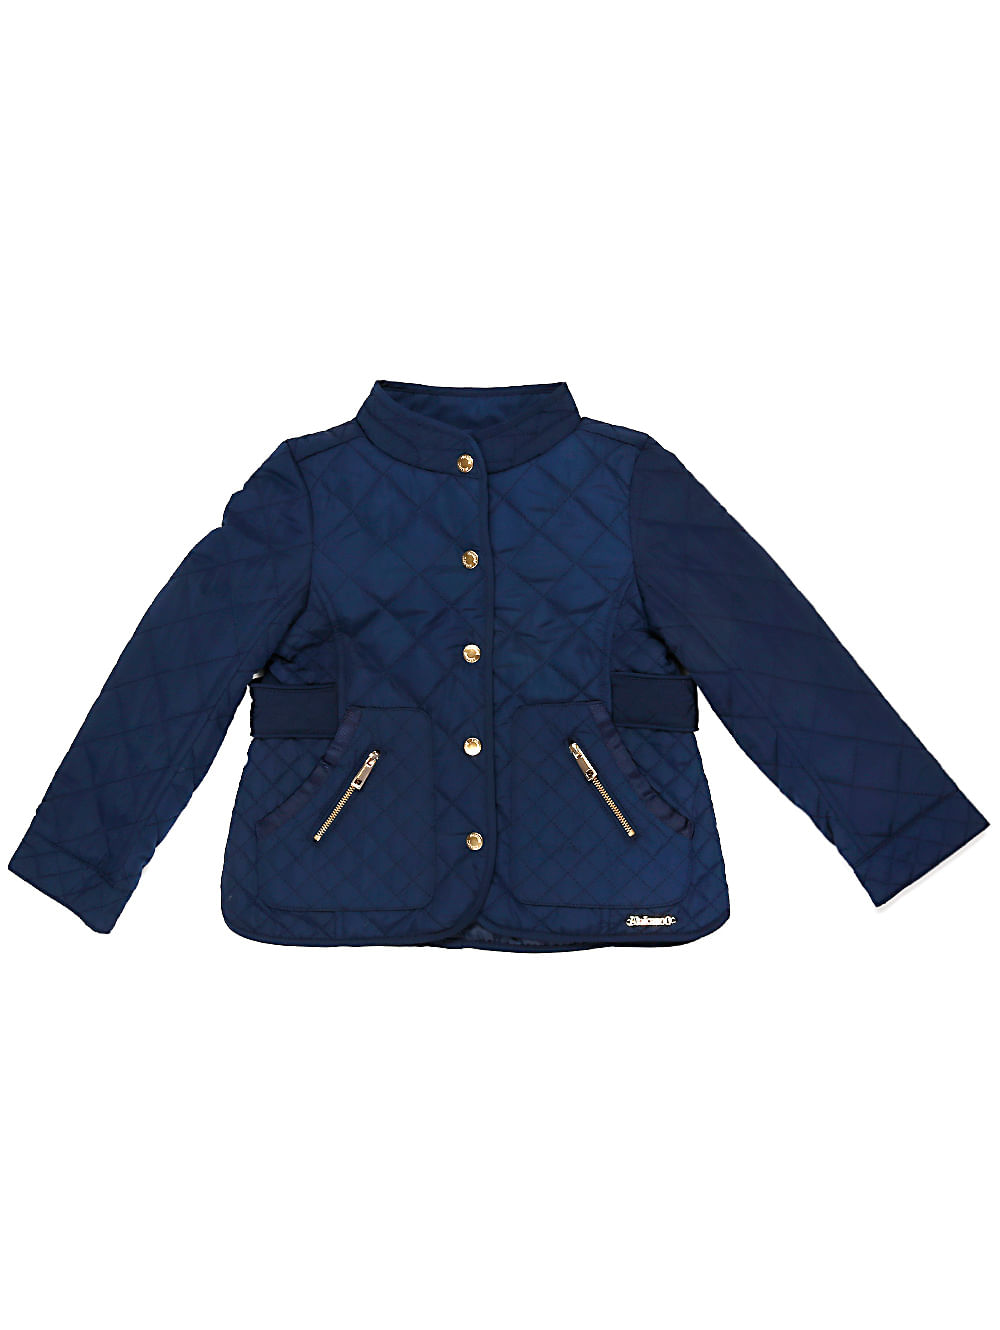 jaqueta infantil azul marinho